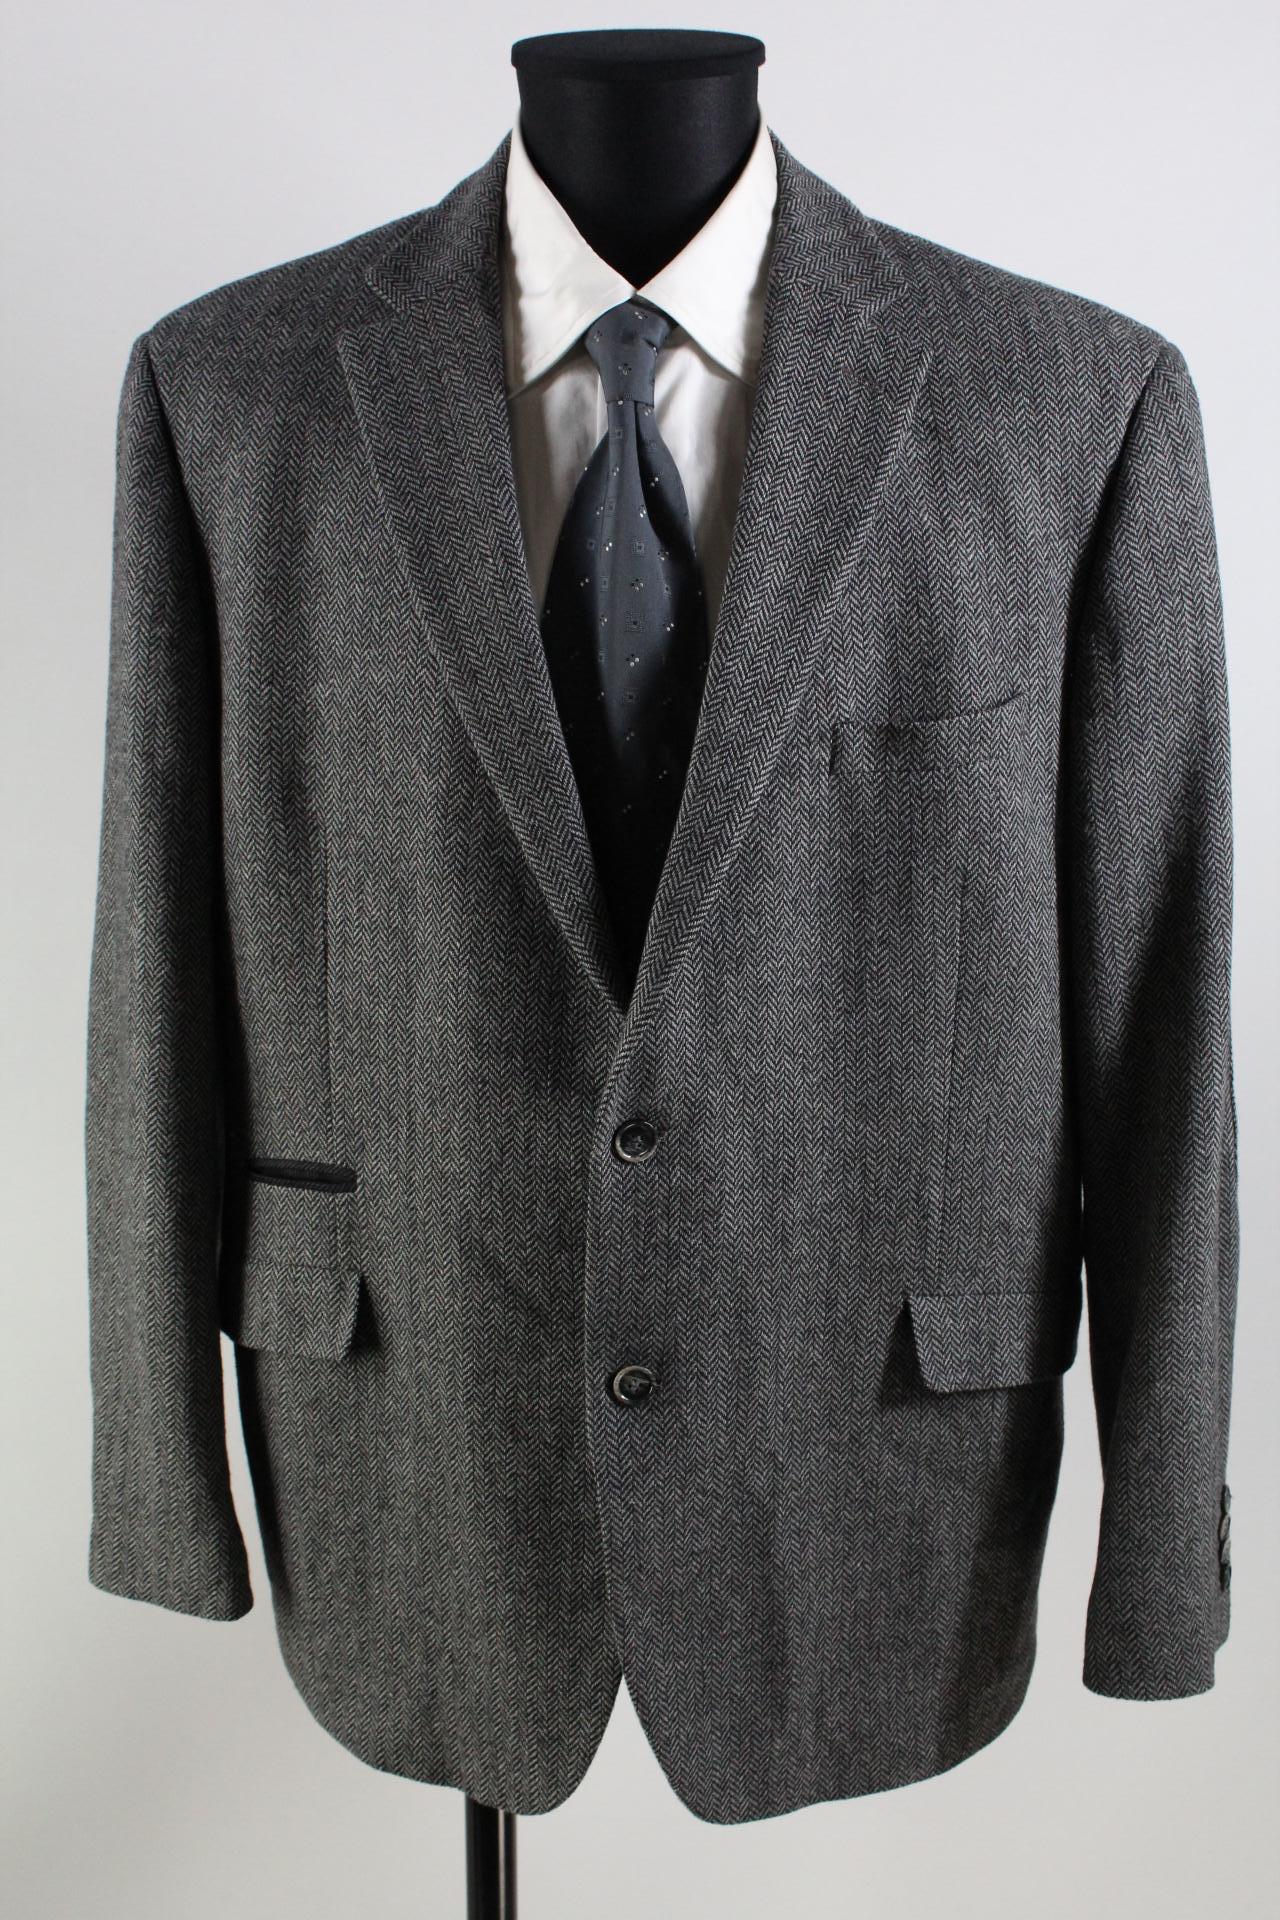 Stns Tweed-Sakko schwarz/grau/weiß Größe 28